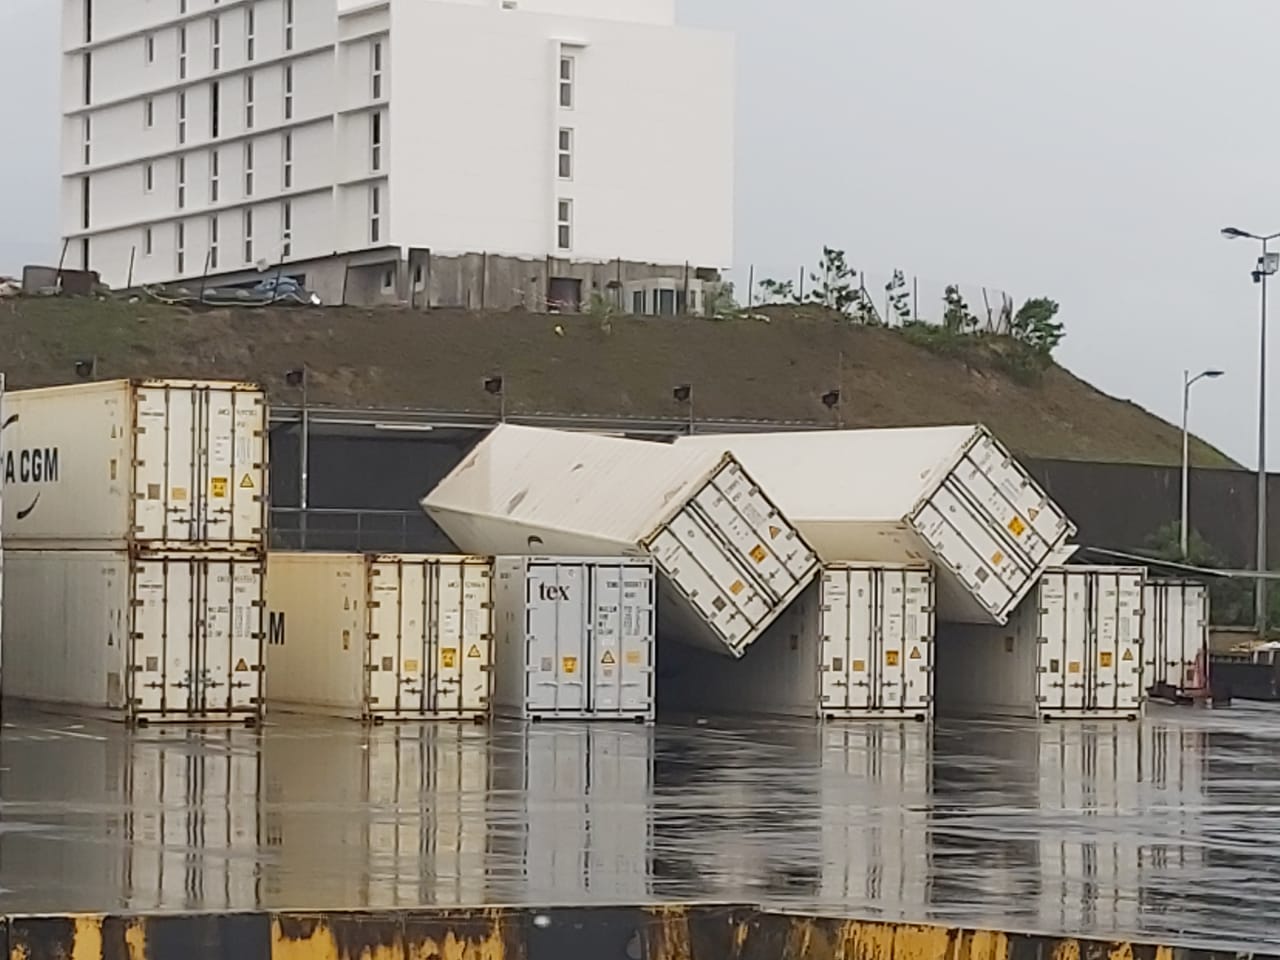     Ouragan Elsa : six conteneurs vides renversés par les rafales de vent

